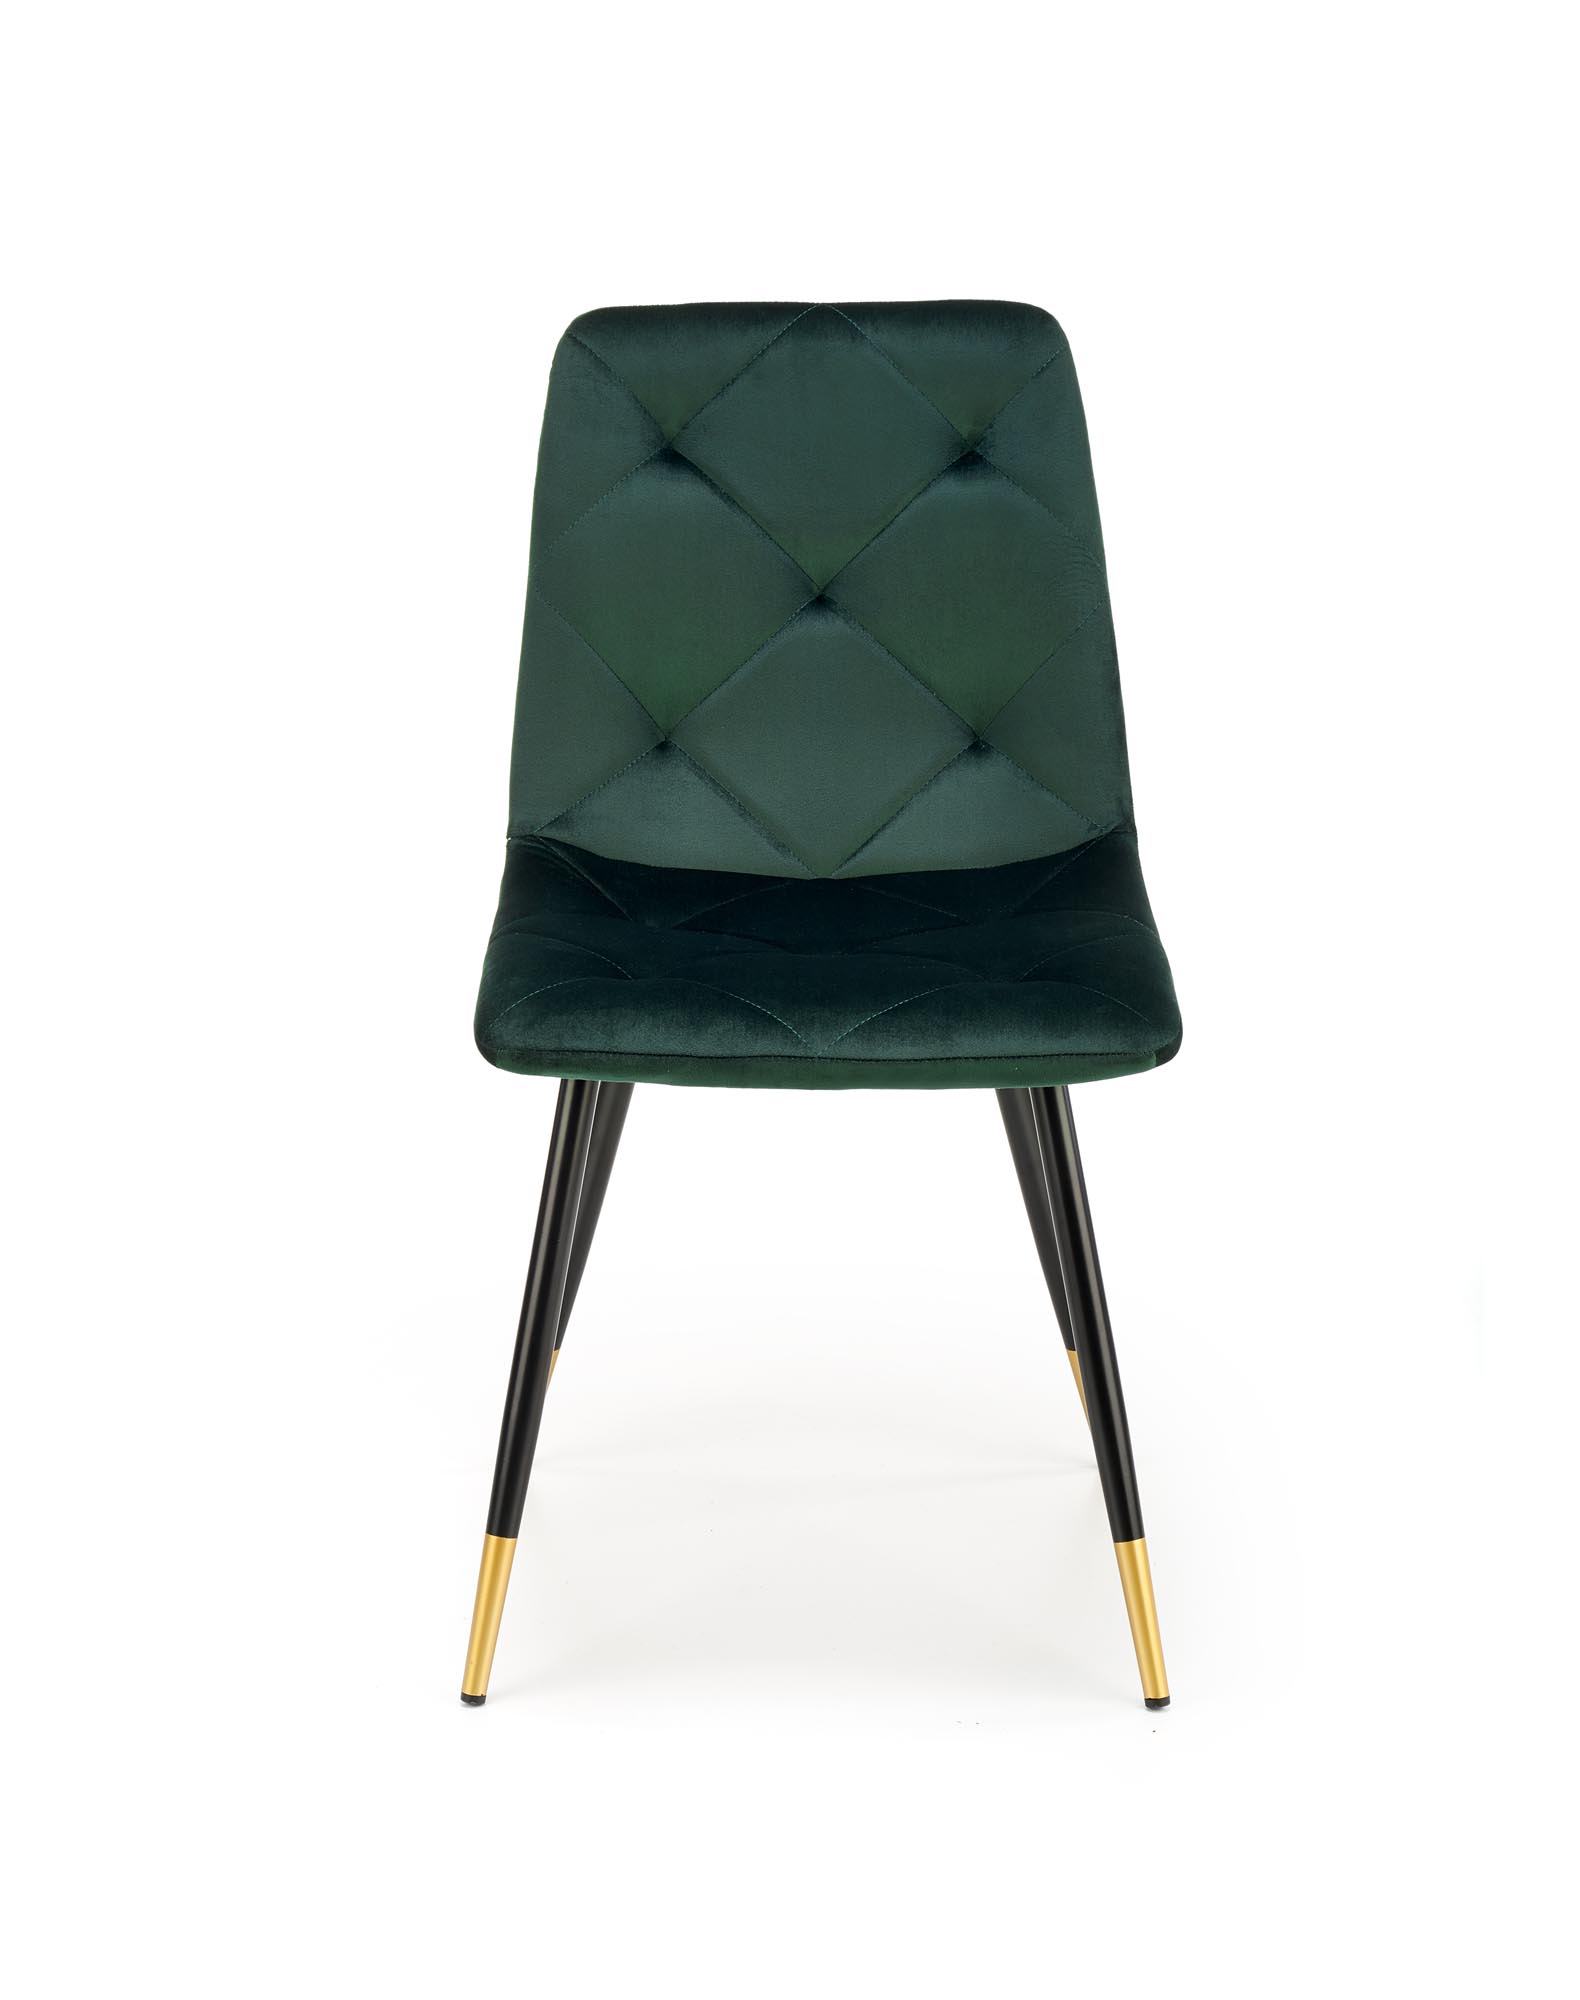 Nowoczesne krzesło tapicerowane K438 - ciemny zielony nowoczesne krzesło tapicerowane k438 - ciemny zielony